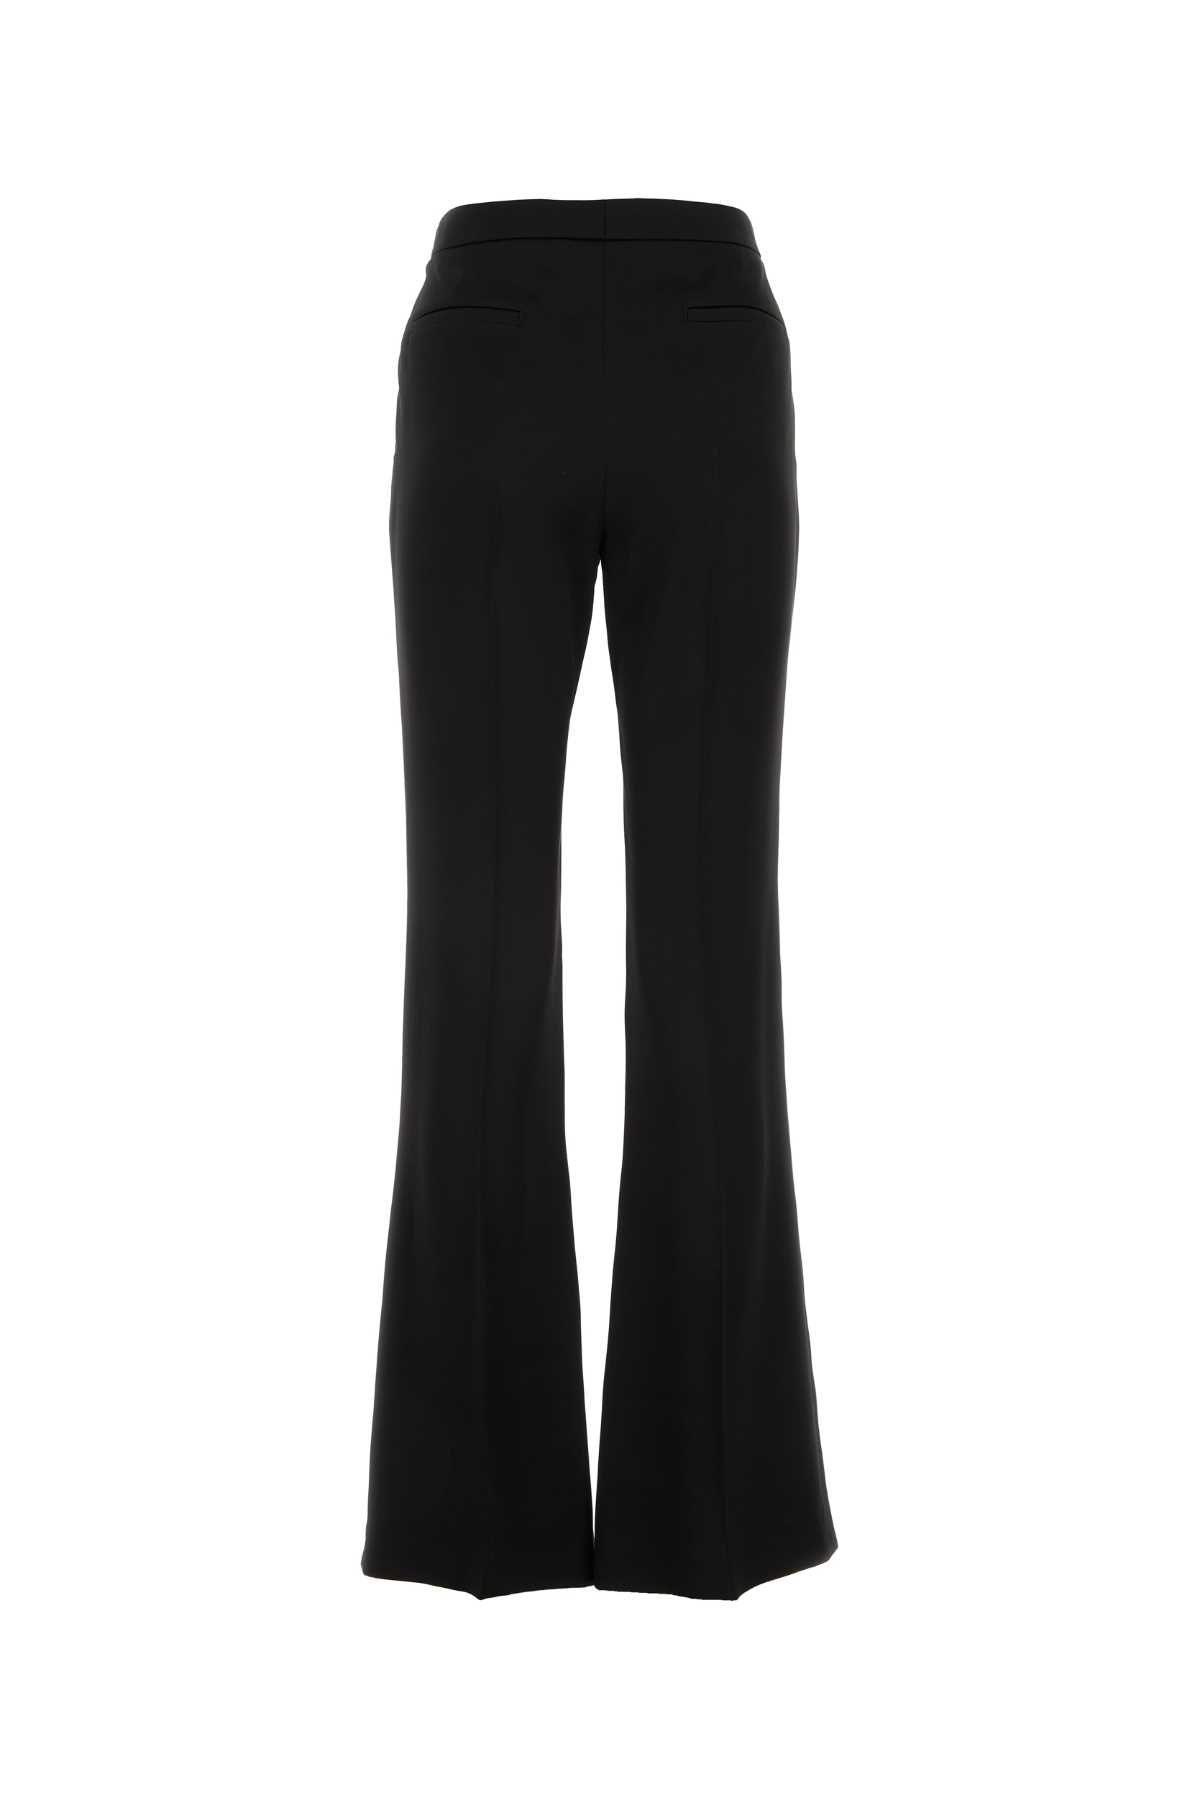 Givenchy Black Satin Pant